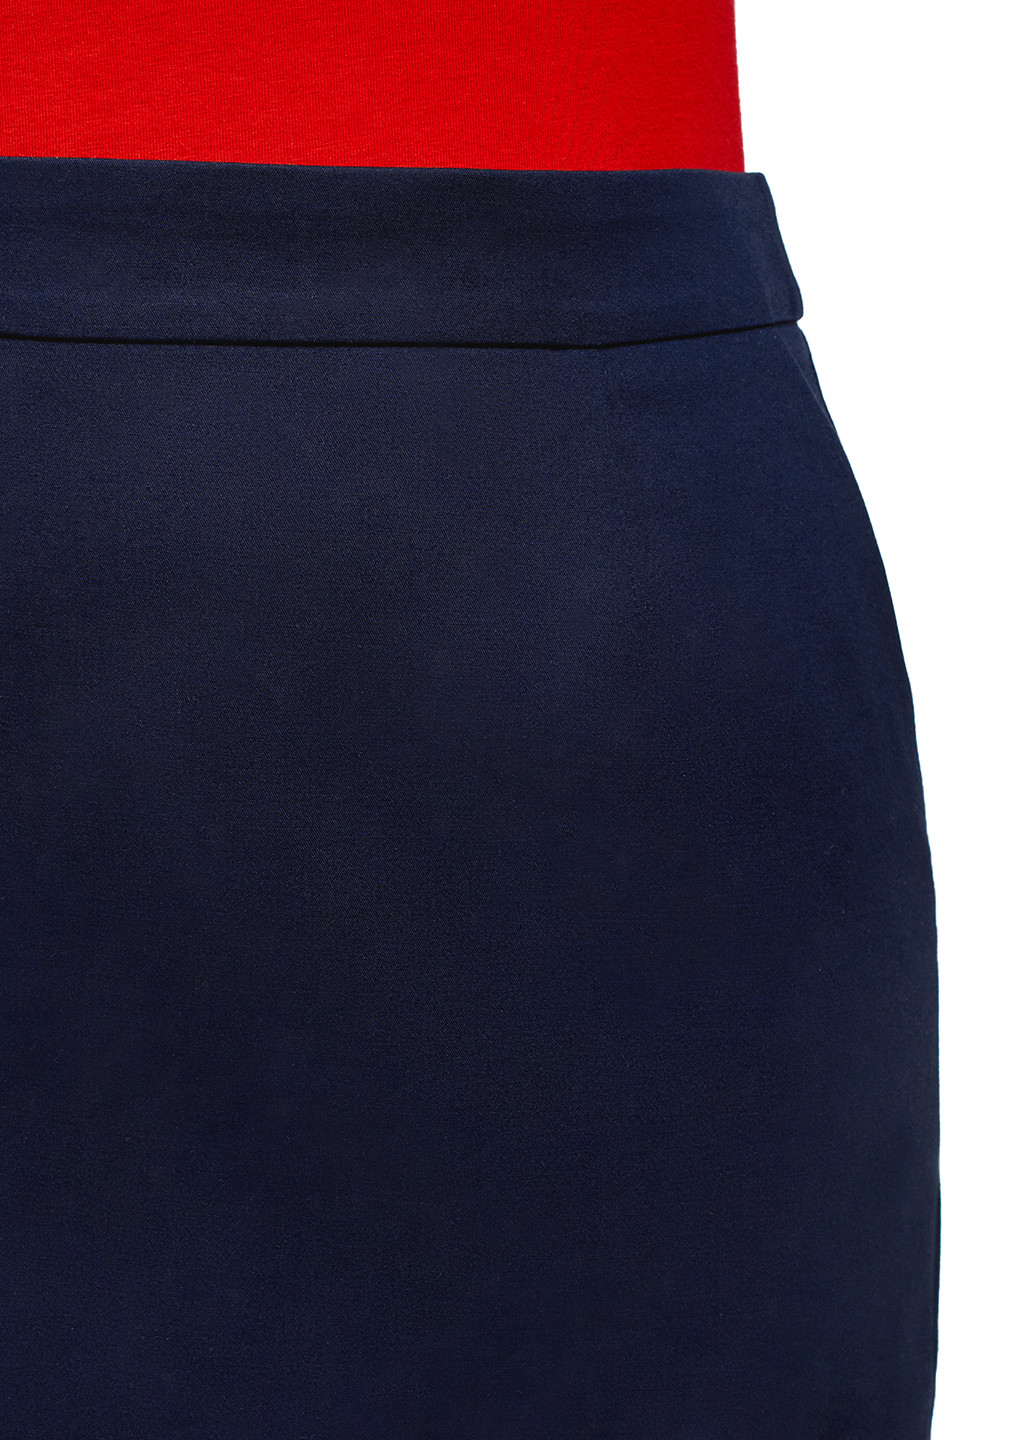 Темно-синяя офисная однотонная юбка Oodji мини